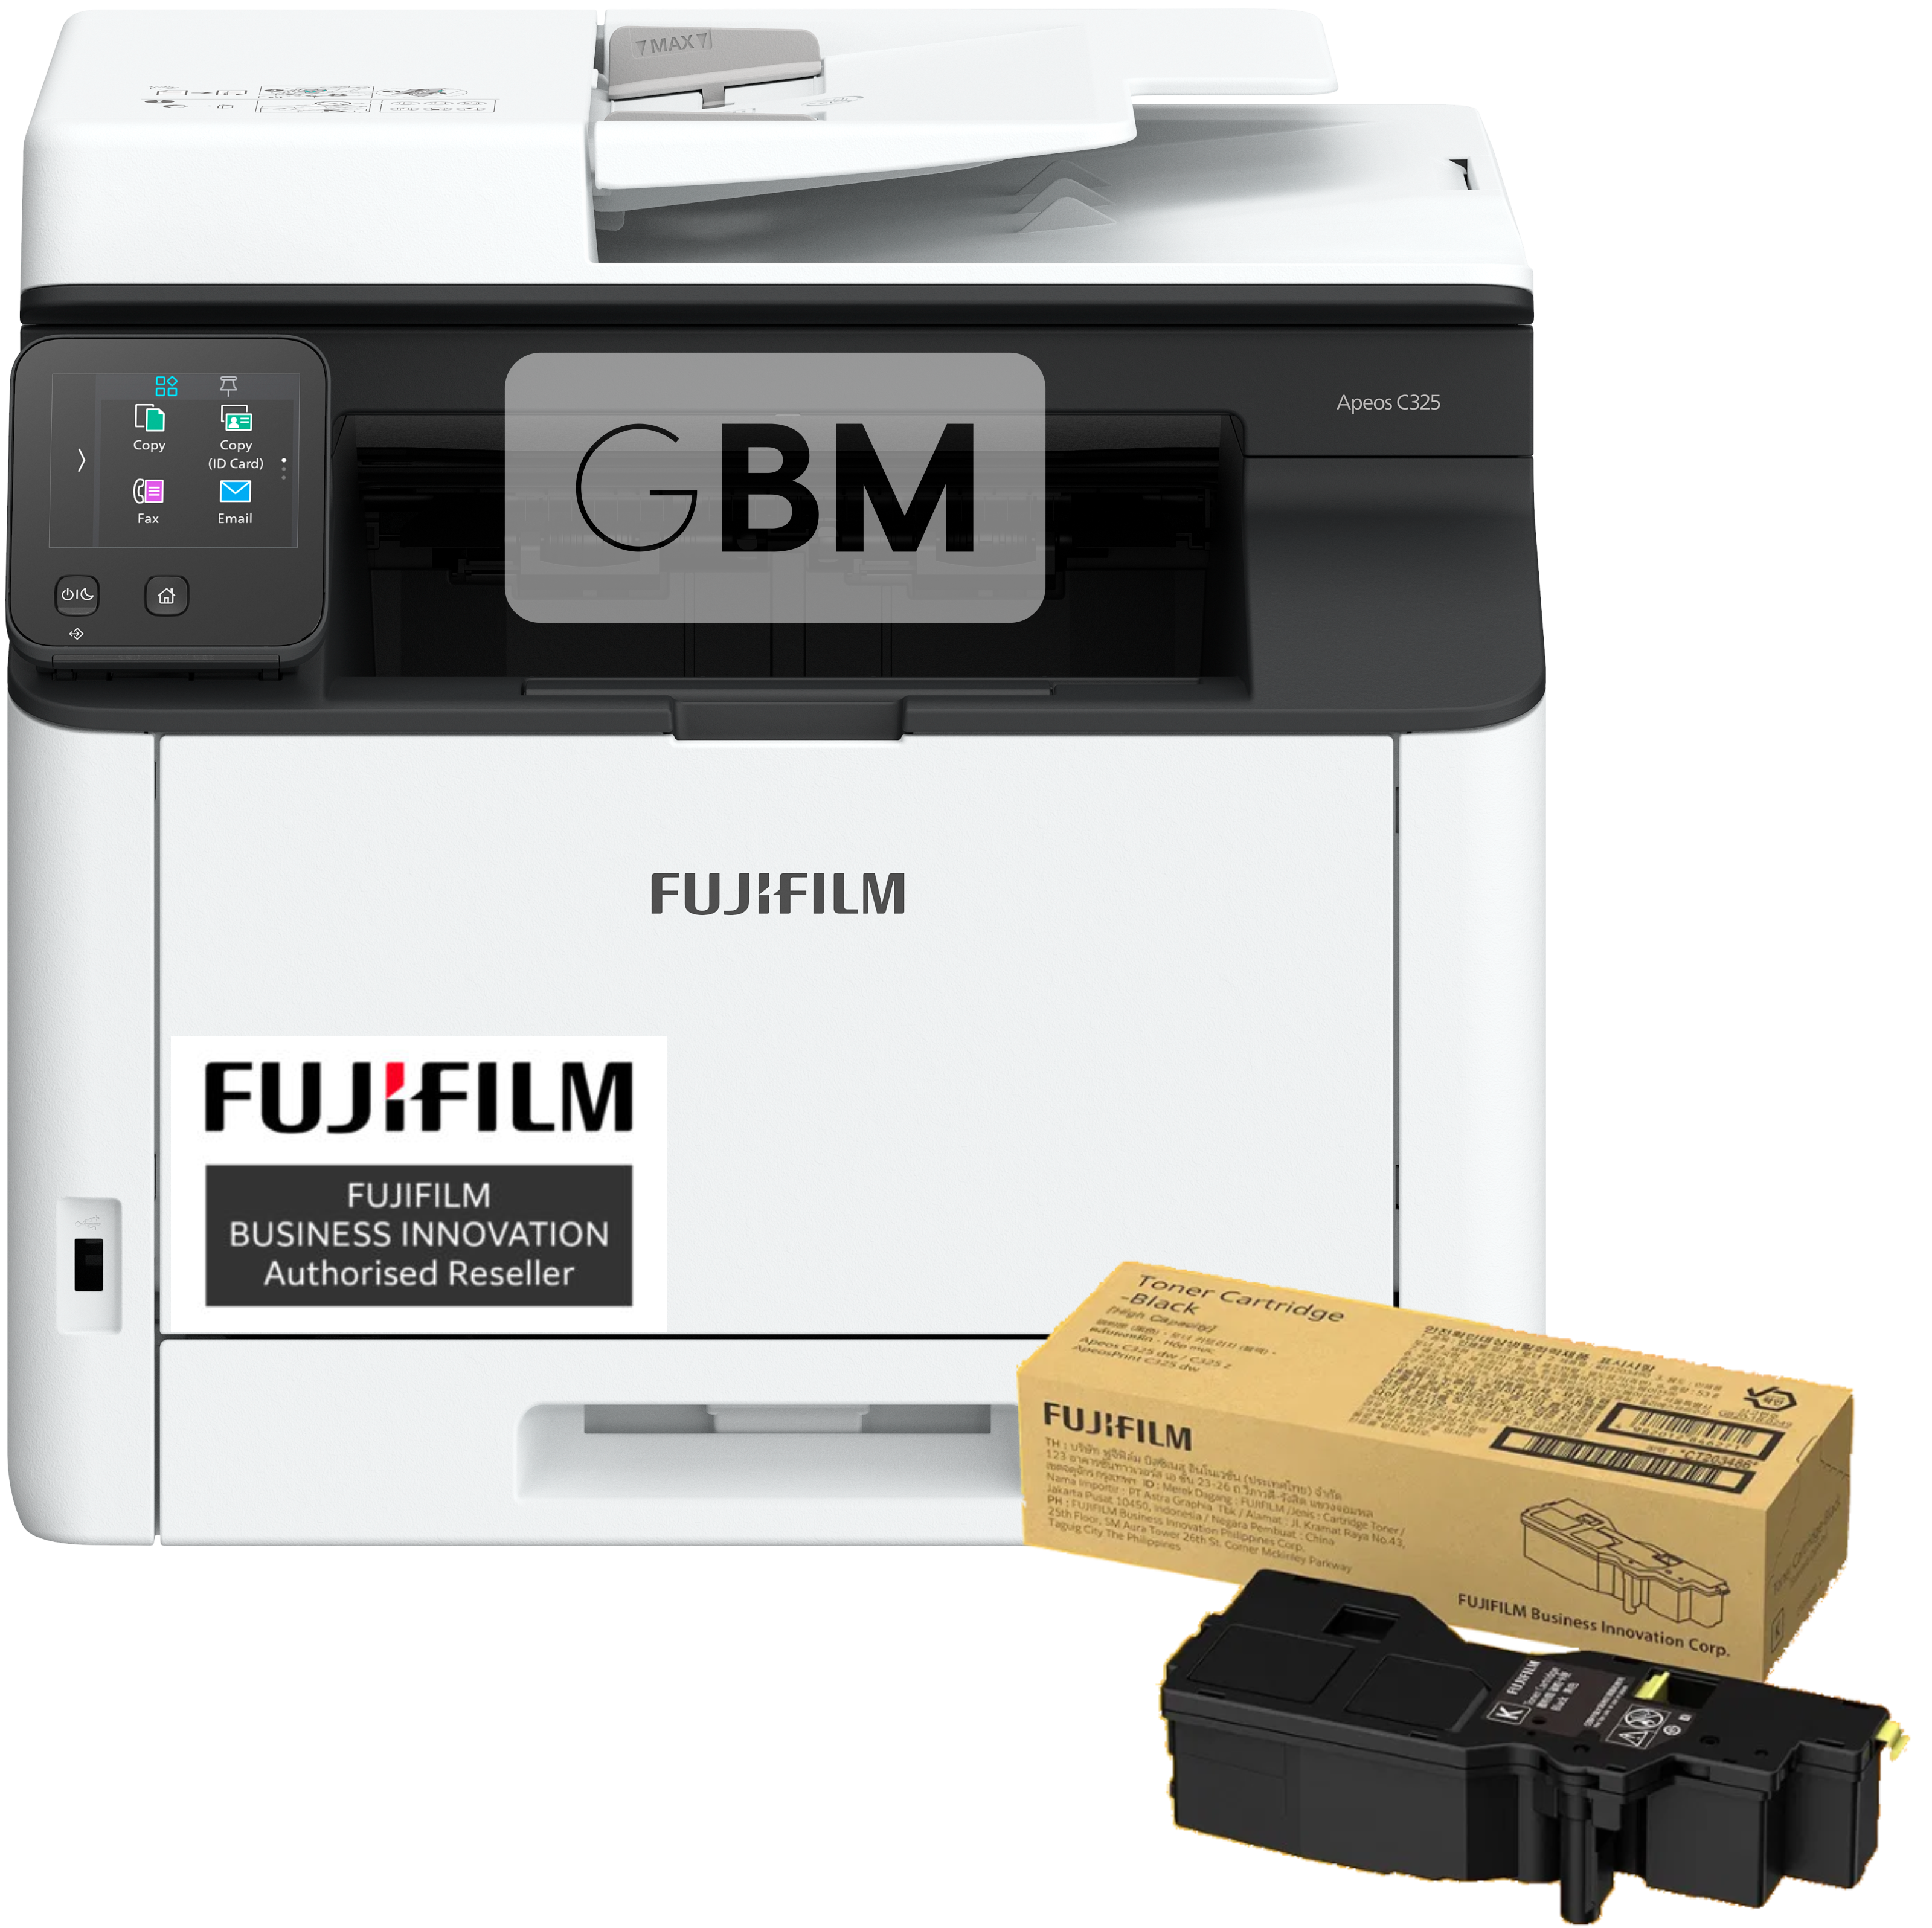 FUJIFILM Apeos C325z A4 Colour Multifunction Printer + Bonus Blk Toner & 3Y Warranty